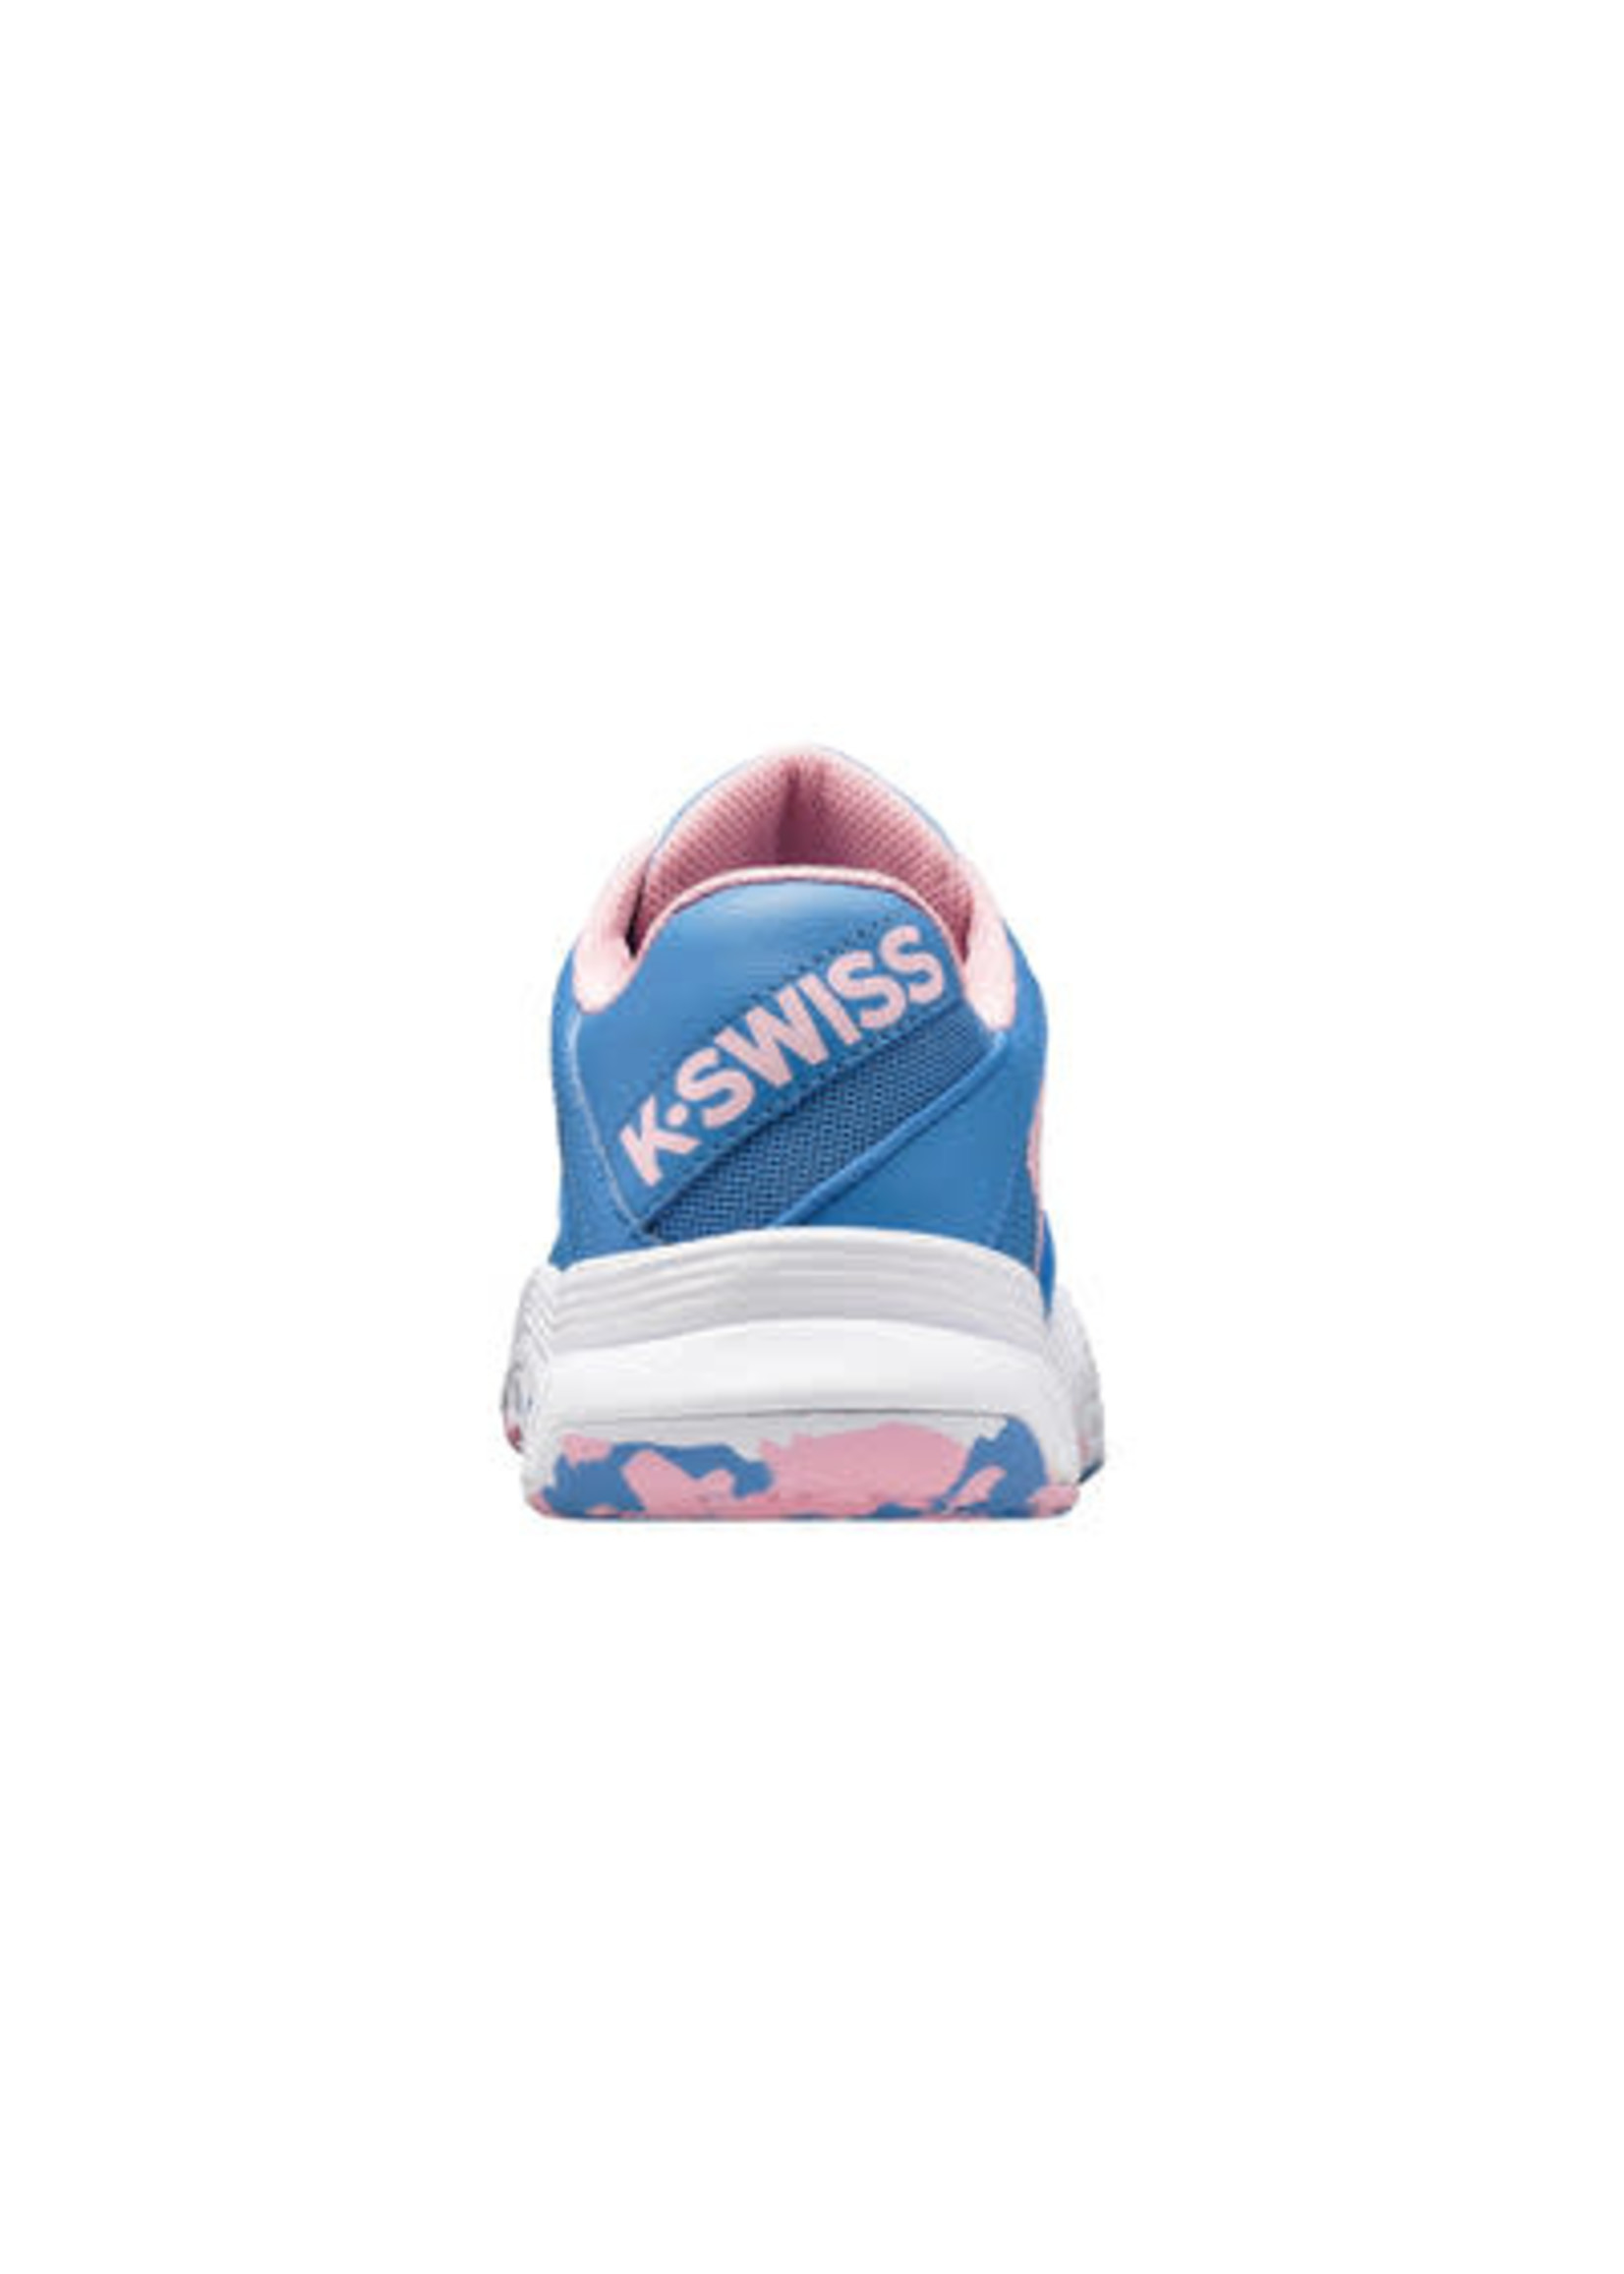 K Swiss K Swiss Court Express Junior Omni Tennis Shoe (2022) - Light Blue